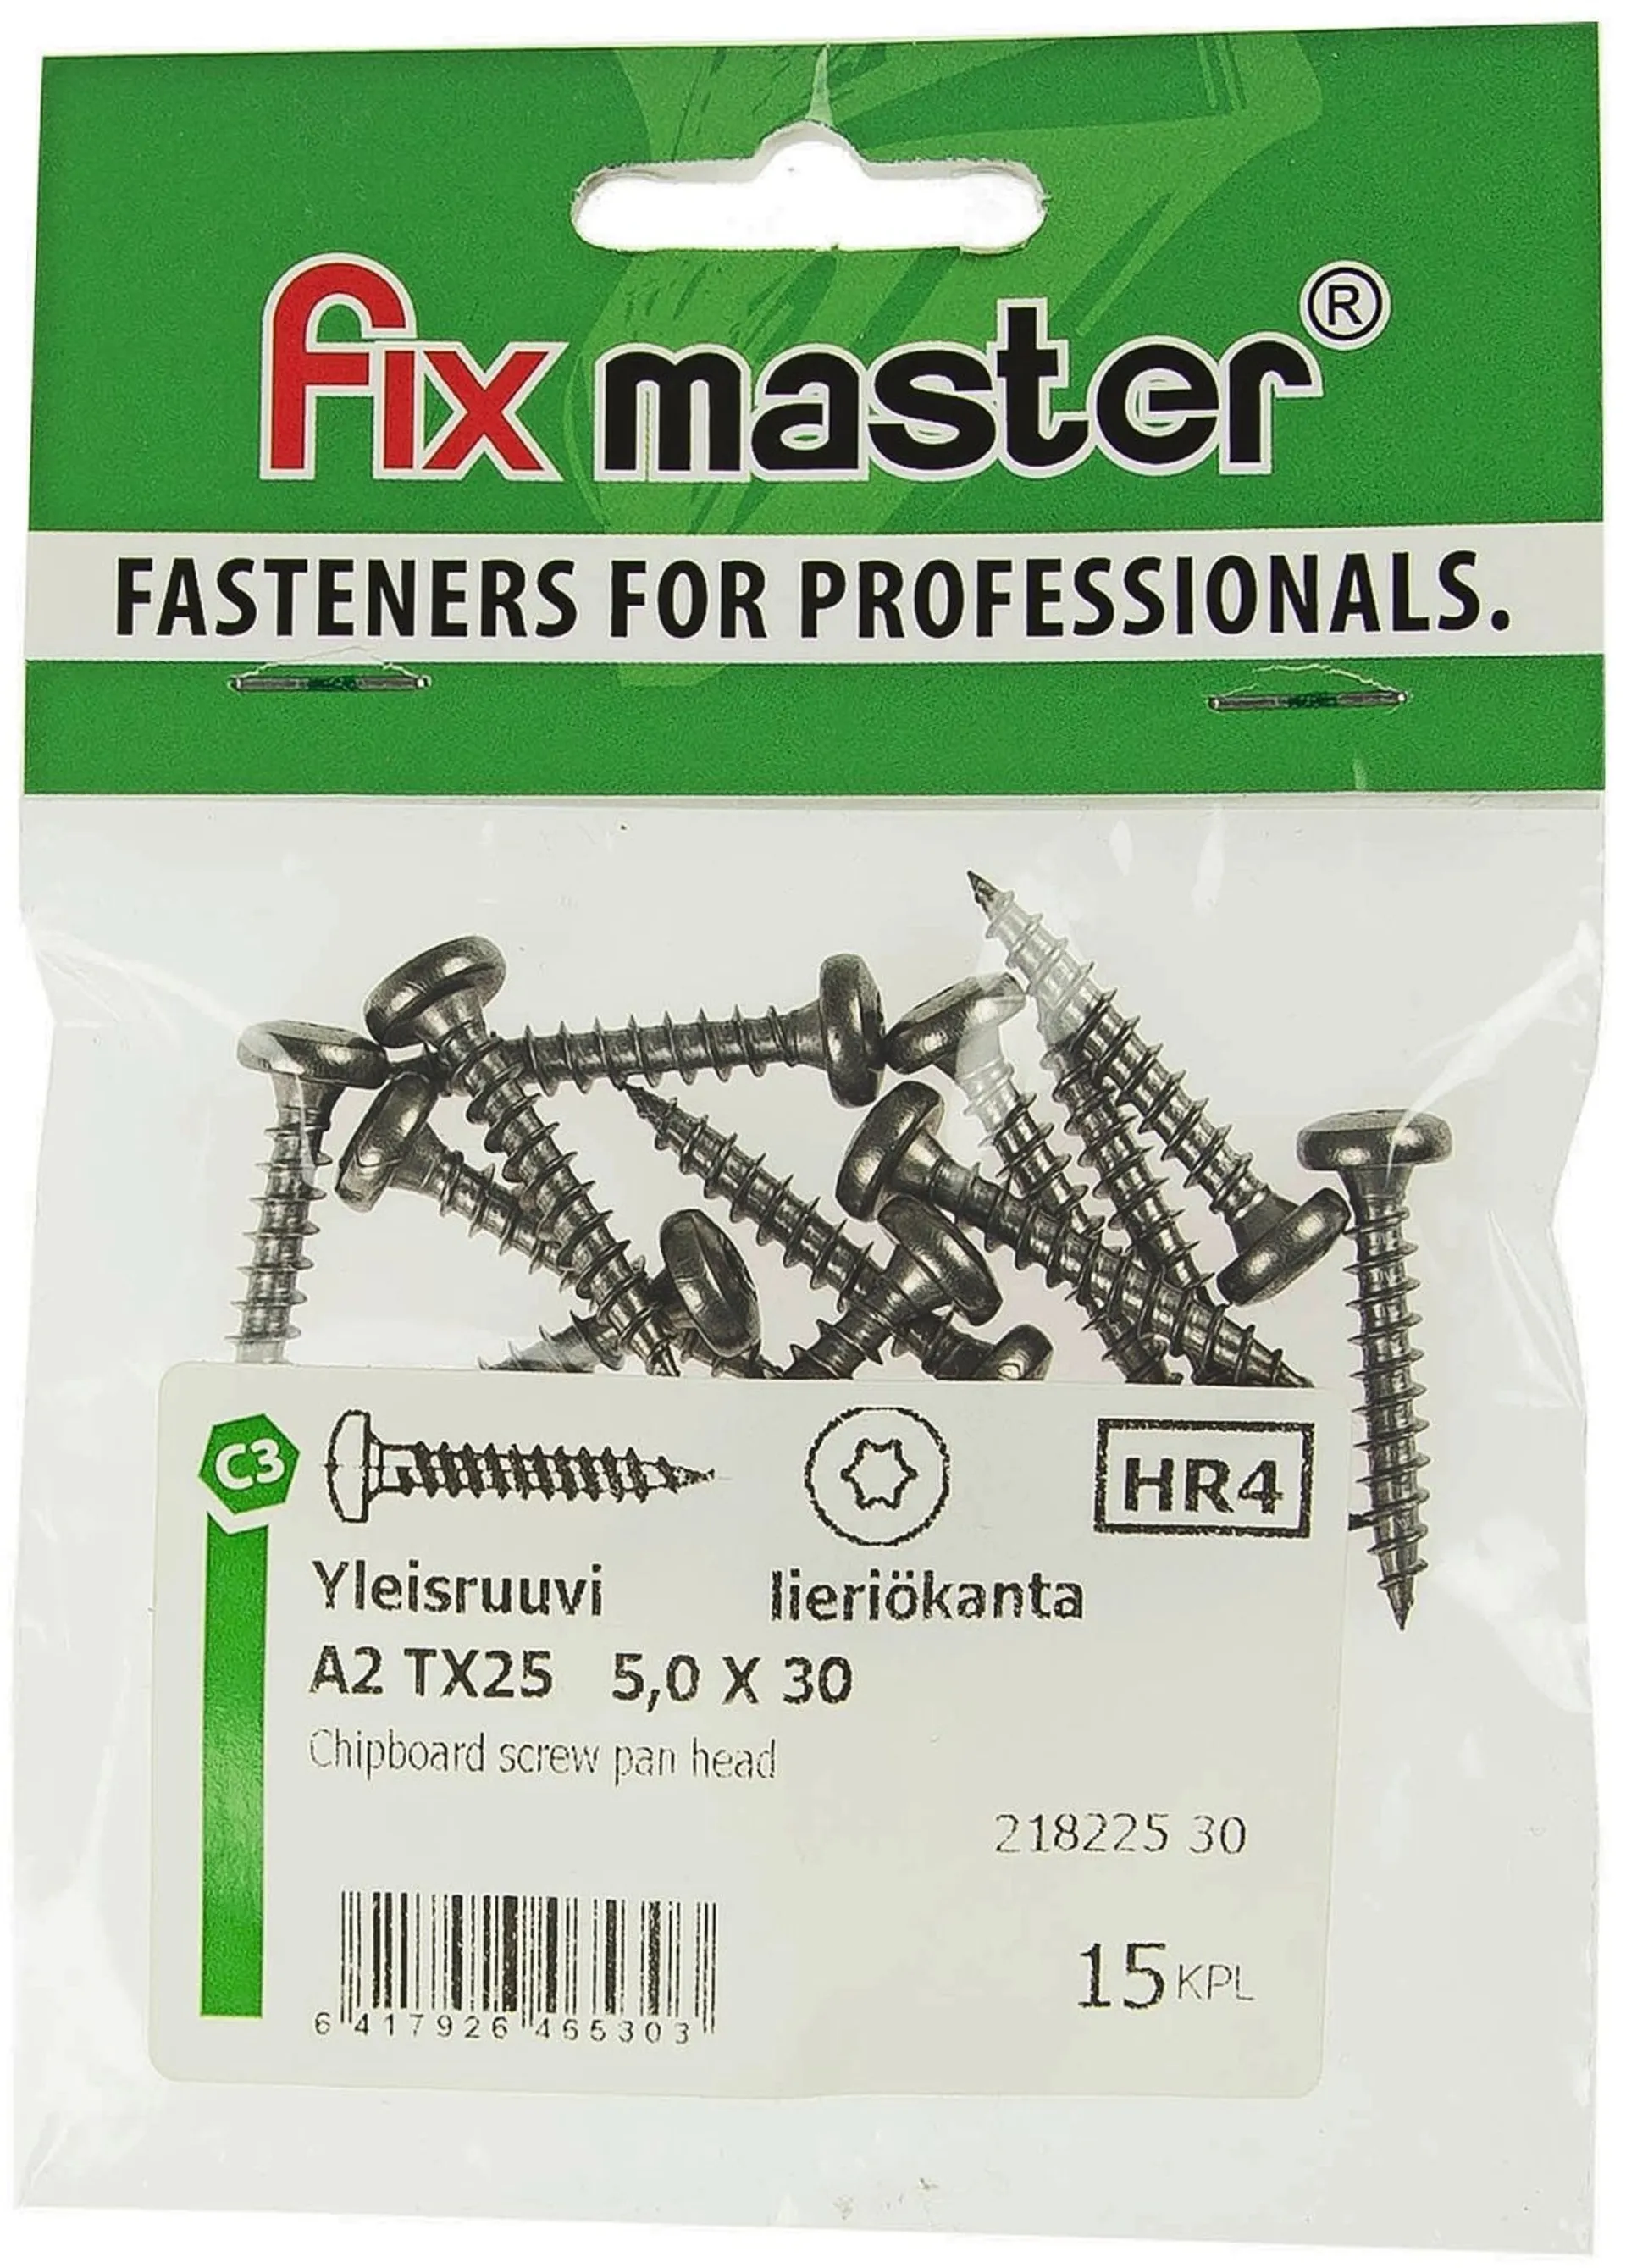 Fix Master yleisruuvi lieriökanta täyskierre A2 torx25 5,0X30 15kpl